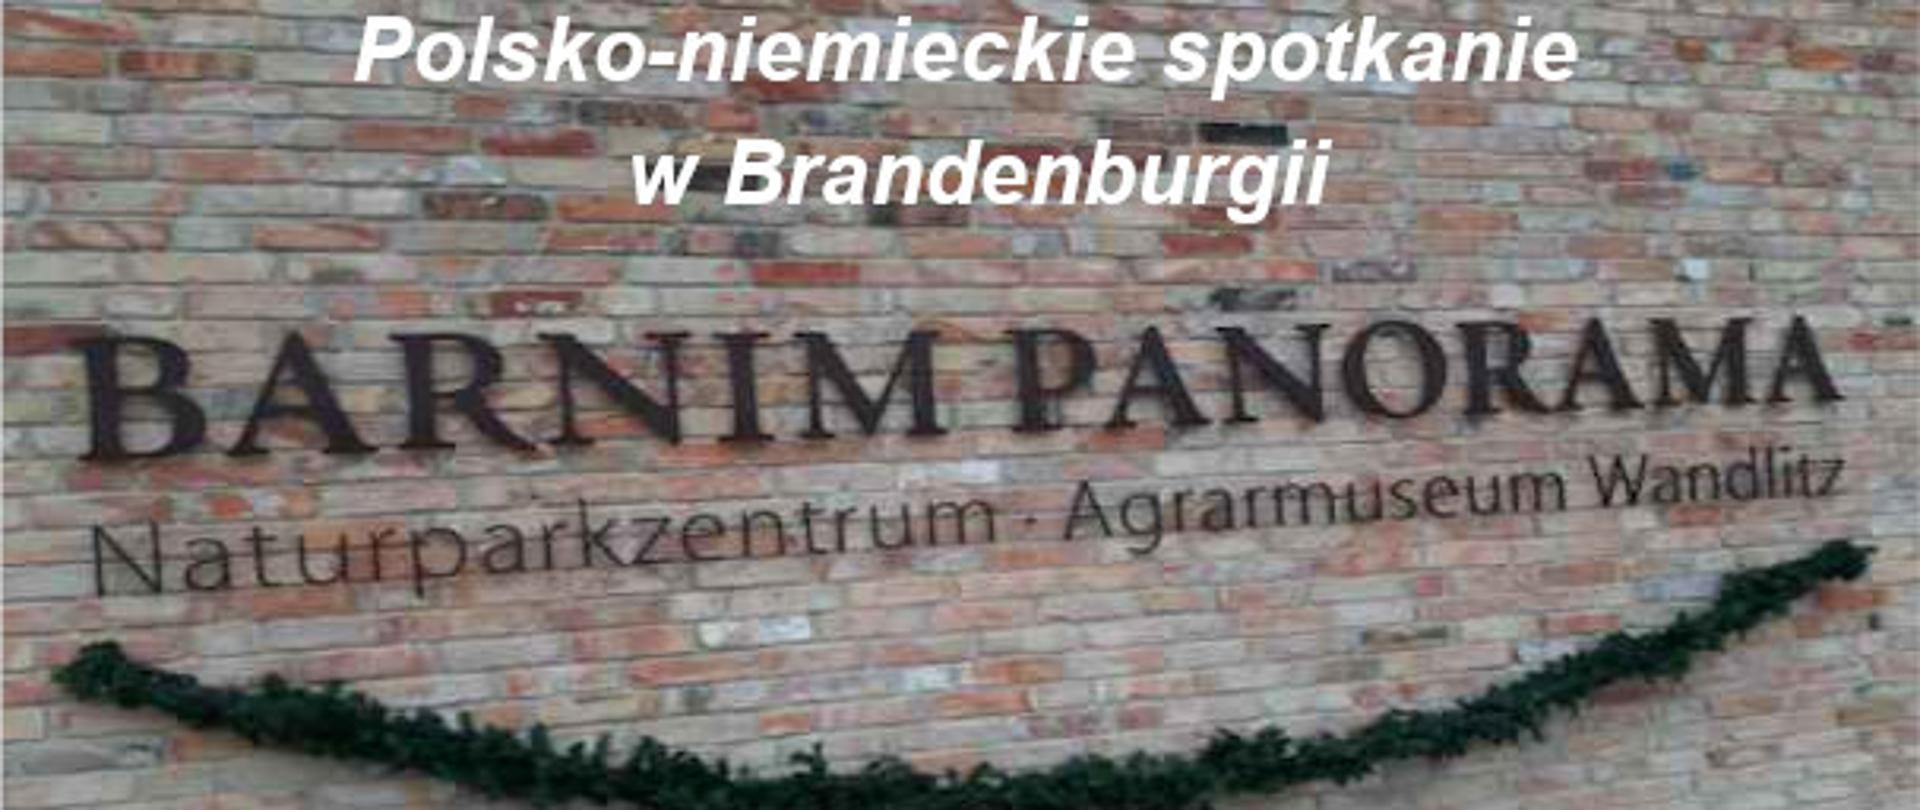 Ściana złożona z cegieł, na niej napis: Barnim Panorama Naturparkzentrum Agrarmuseum Wandlitz. Powyżej napis: Polsko-niemieckie spotkanie w Brandenburgii 